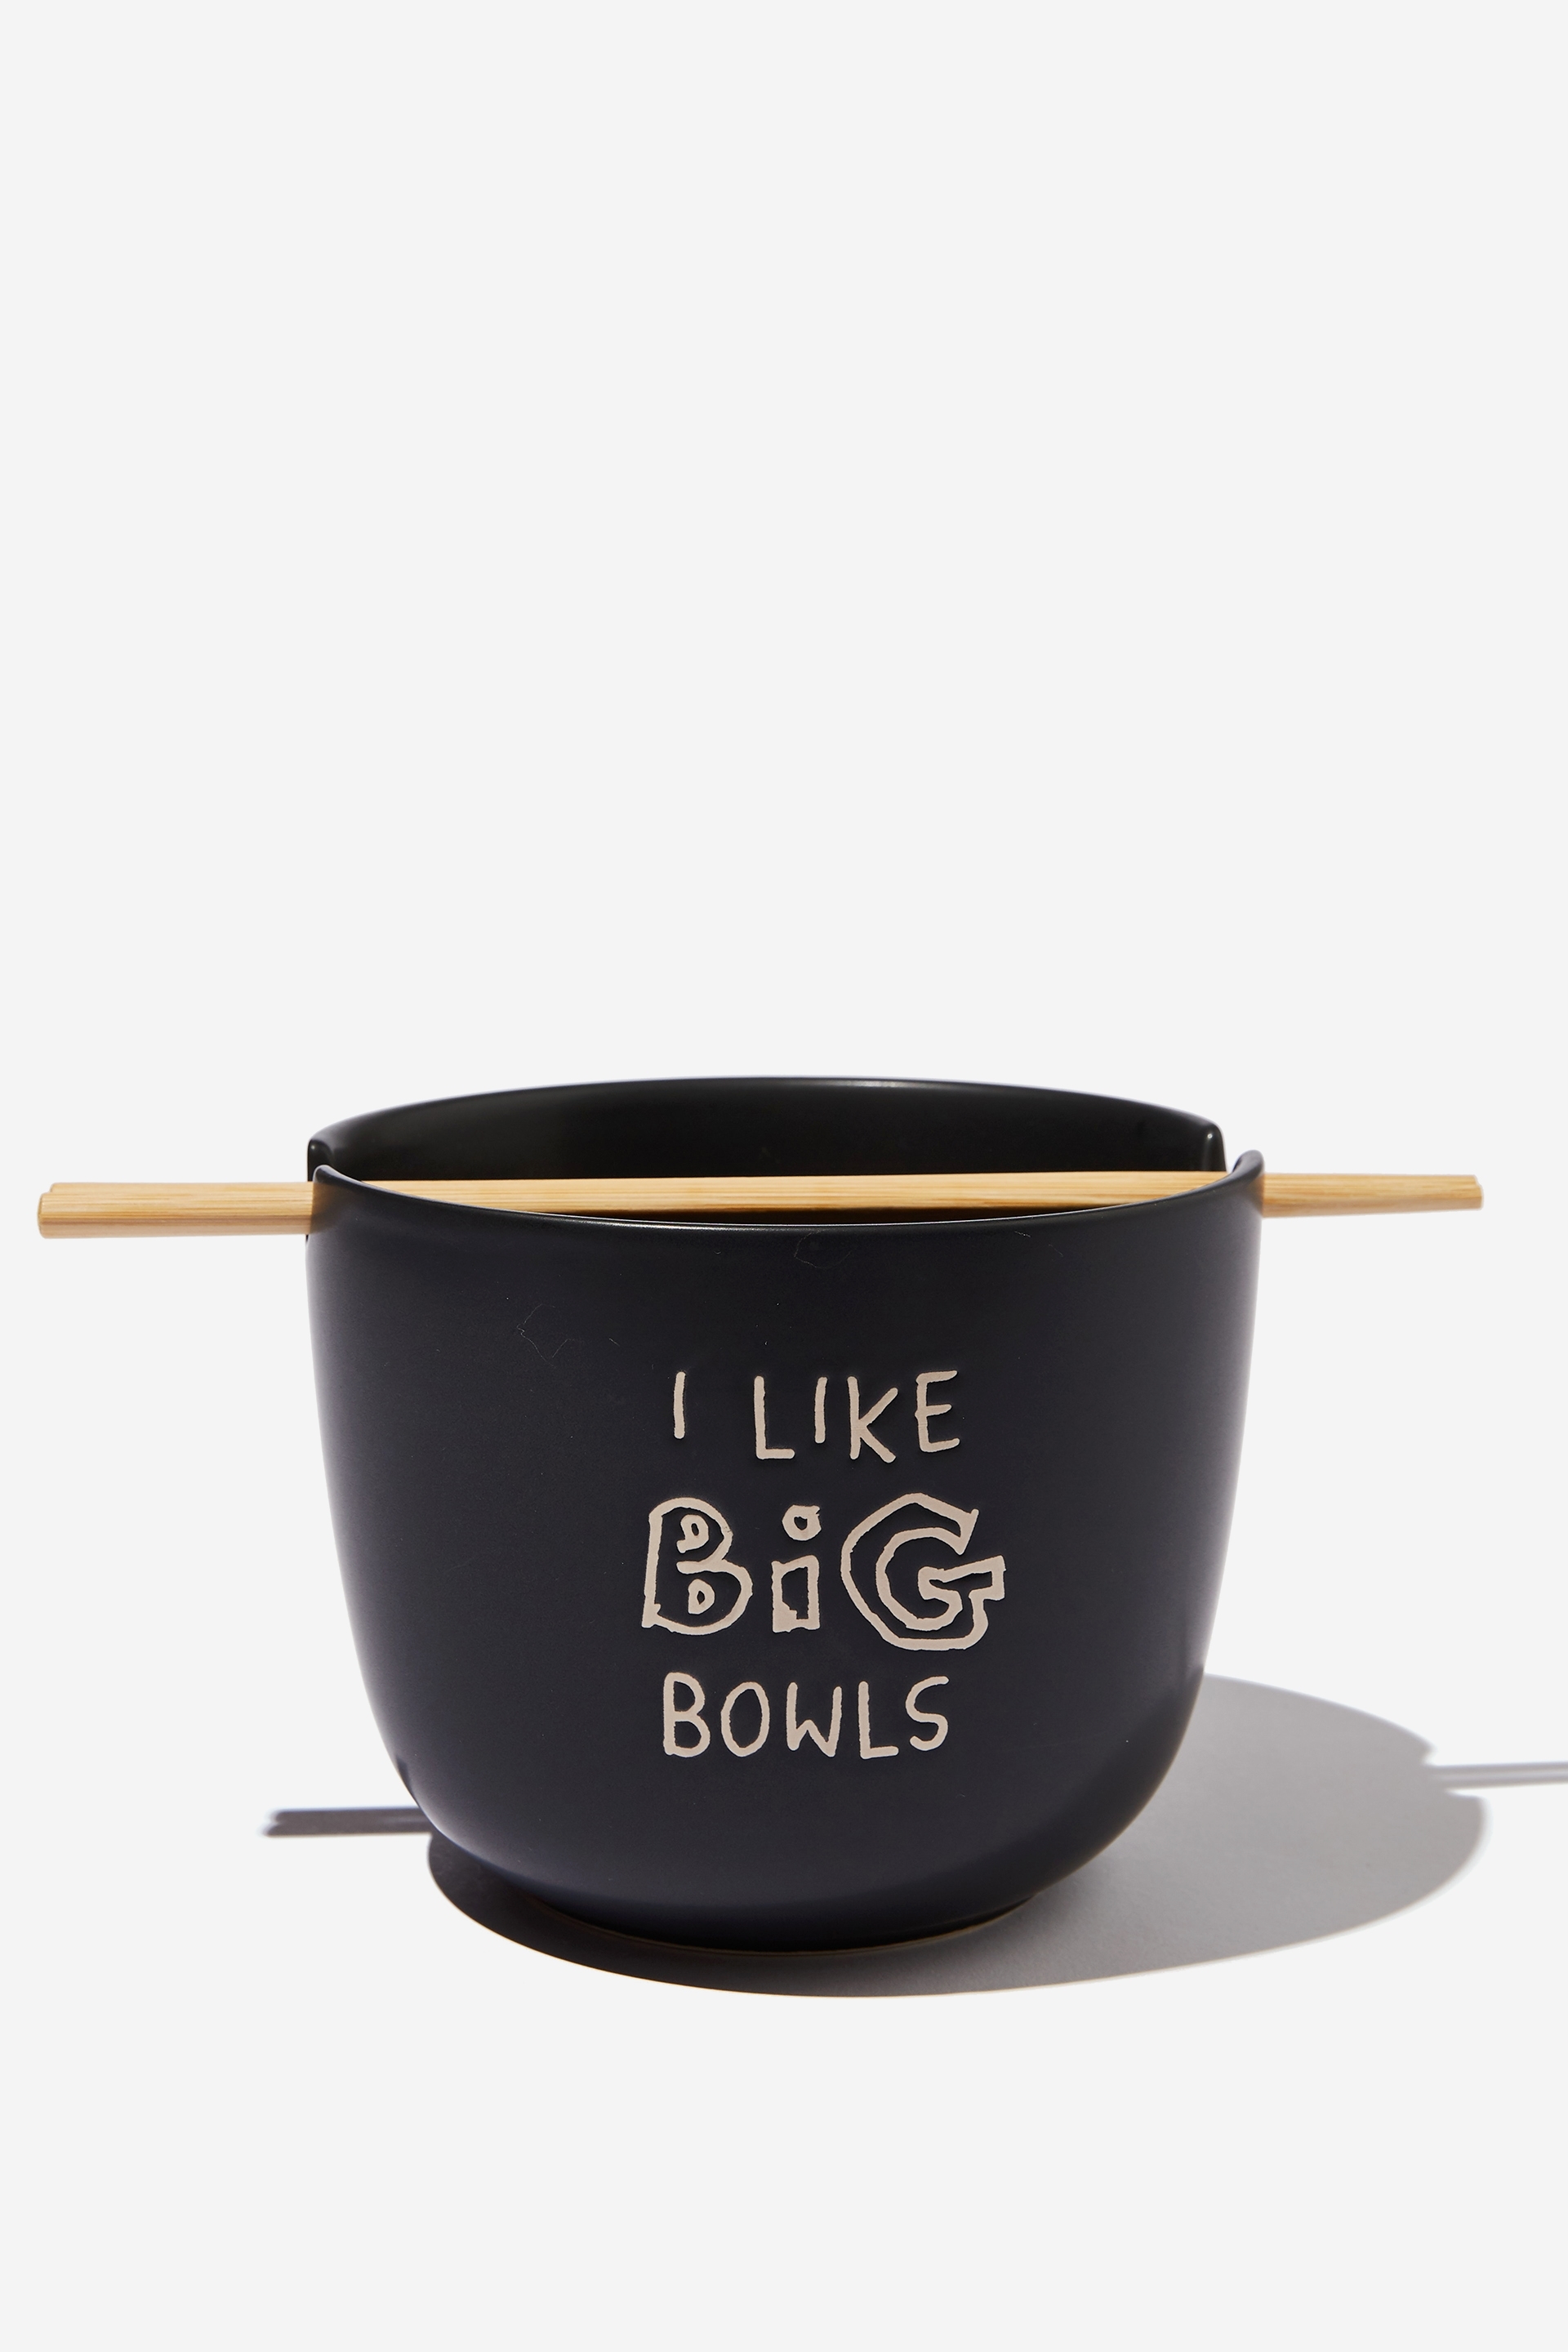 Typo - Feed Me Bowl - Big bowls